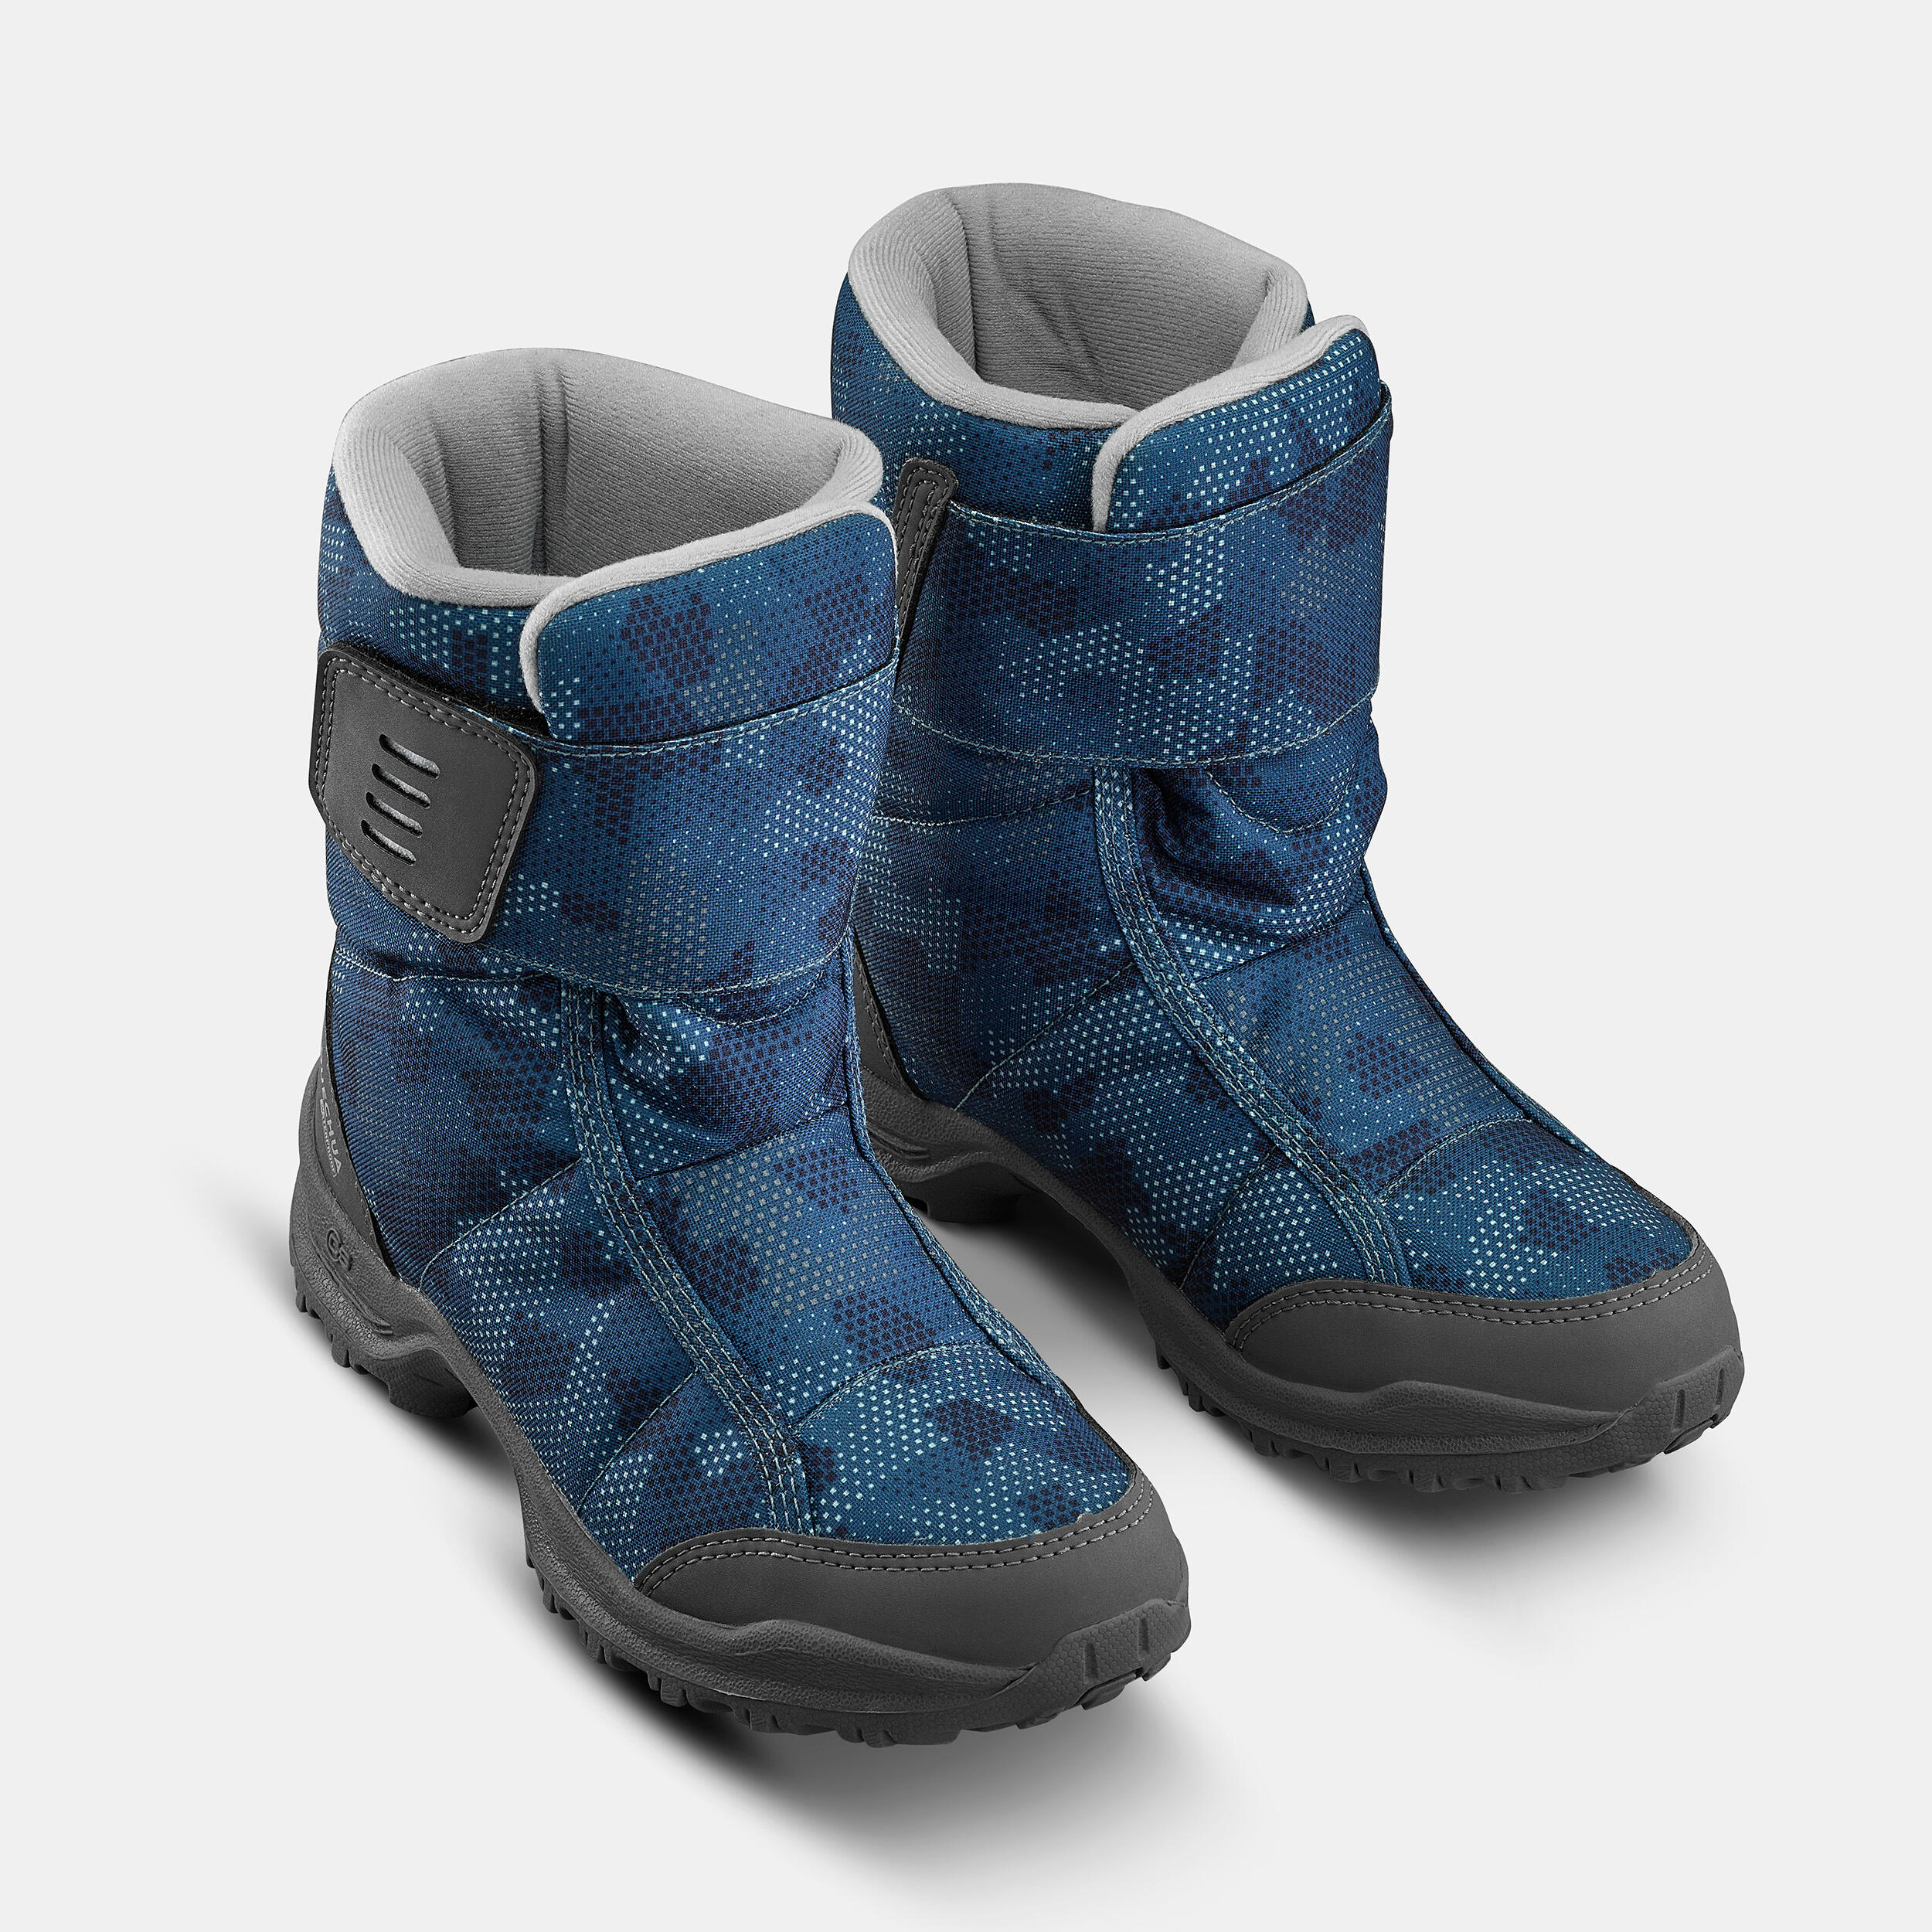 Kids’ Warm Waterproof Snow Hiking Boots SH100 X-Warm Size 7 - 5.5 2/7